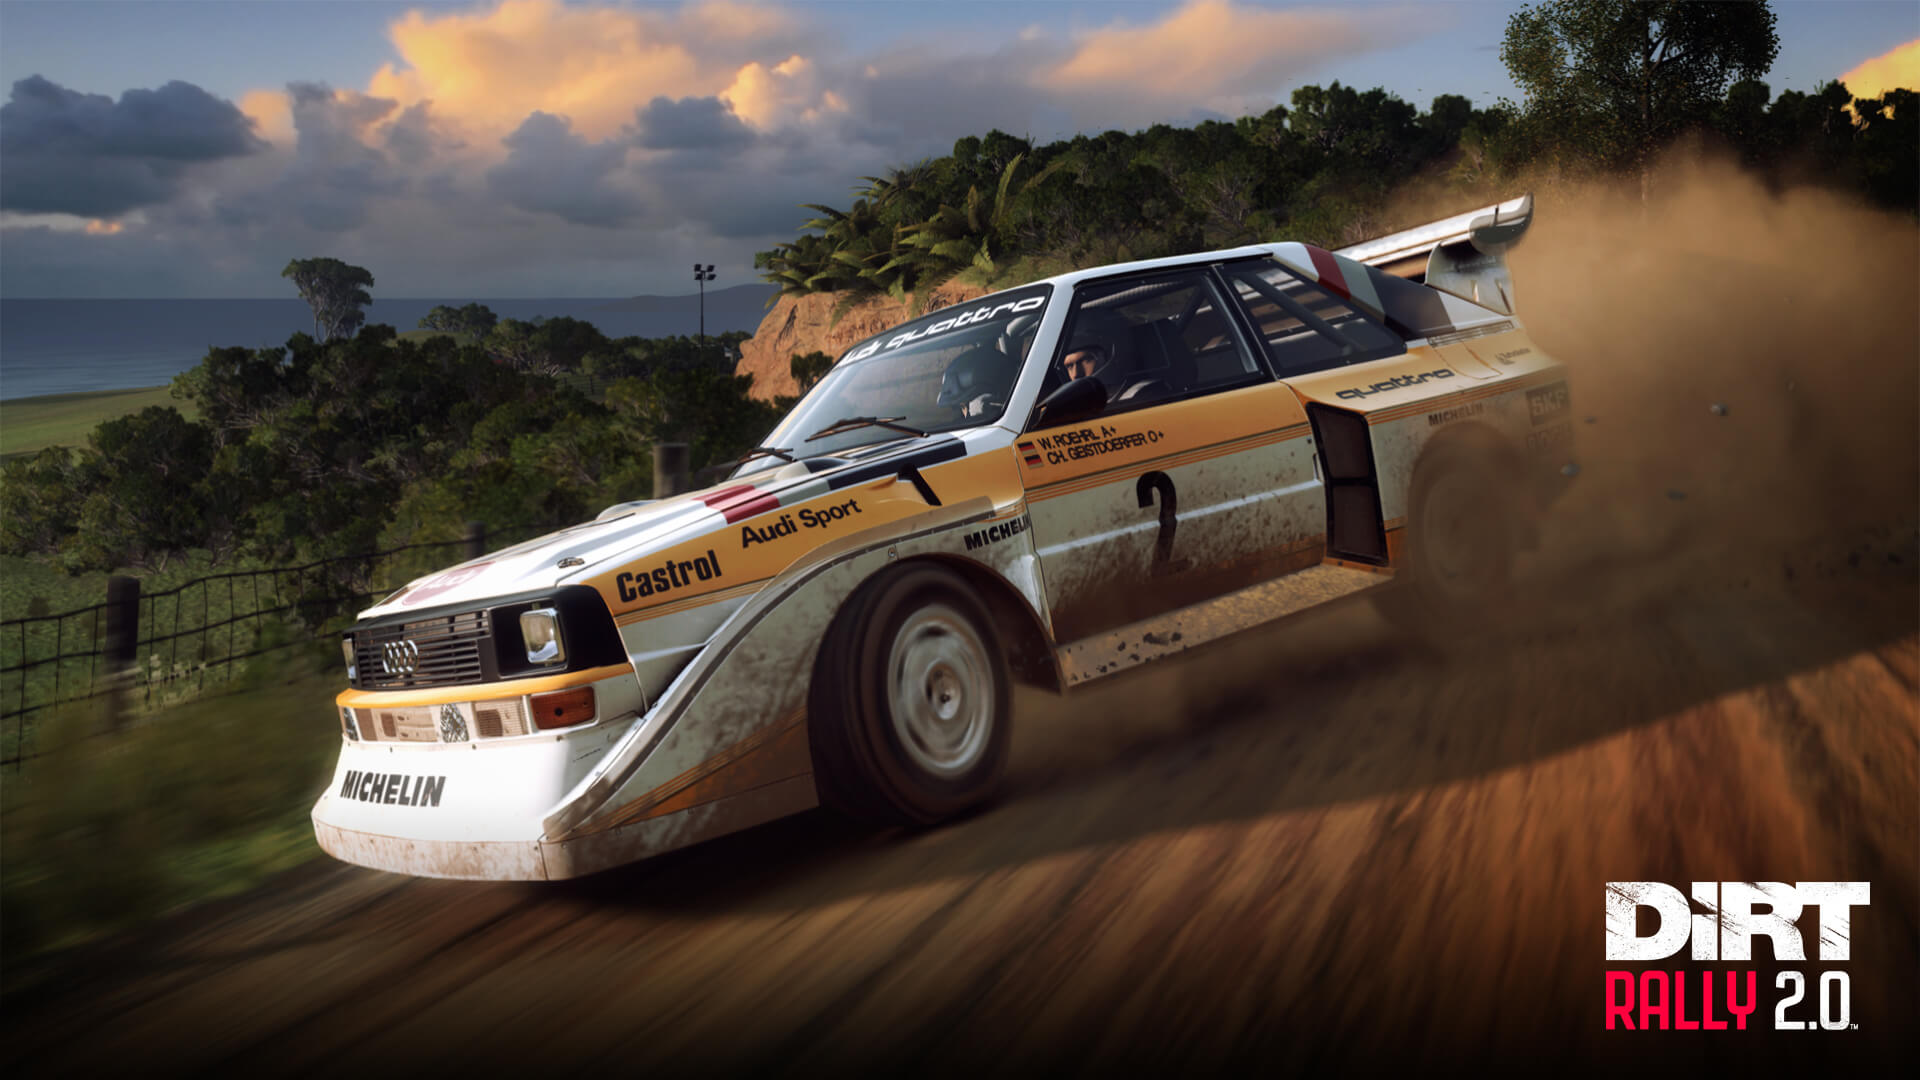 DiRT Rally 2.0 Edición Juego del Año